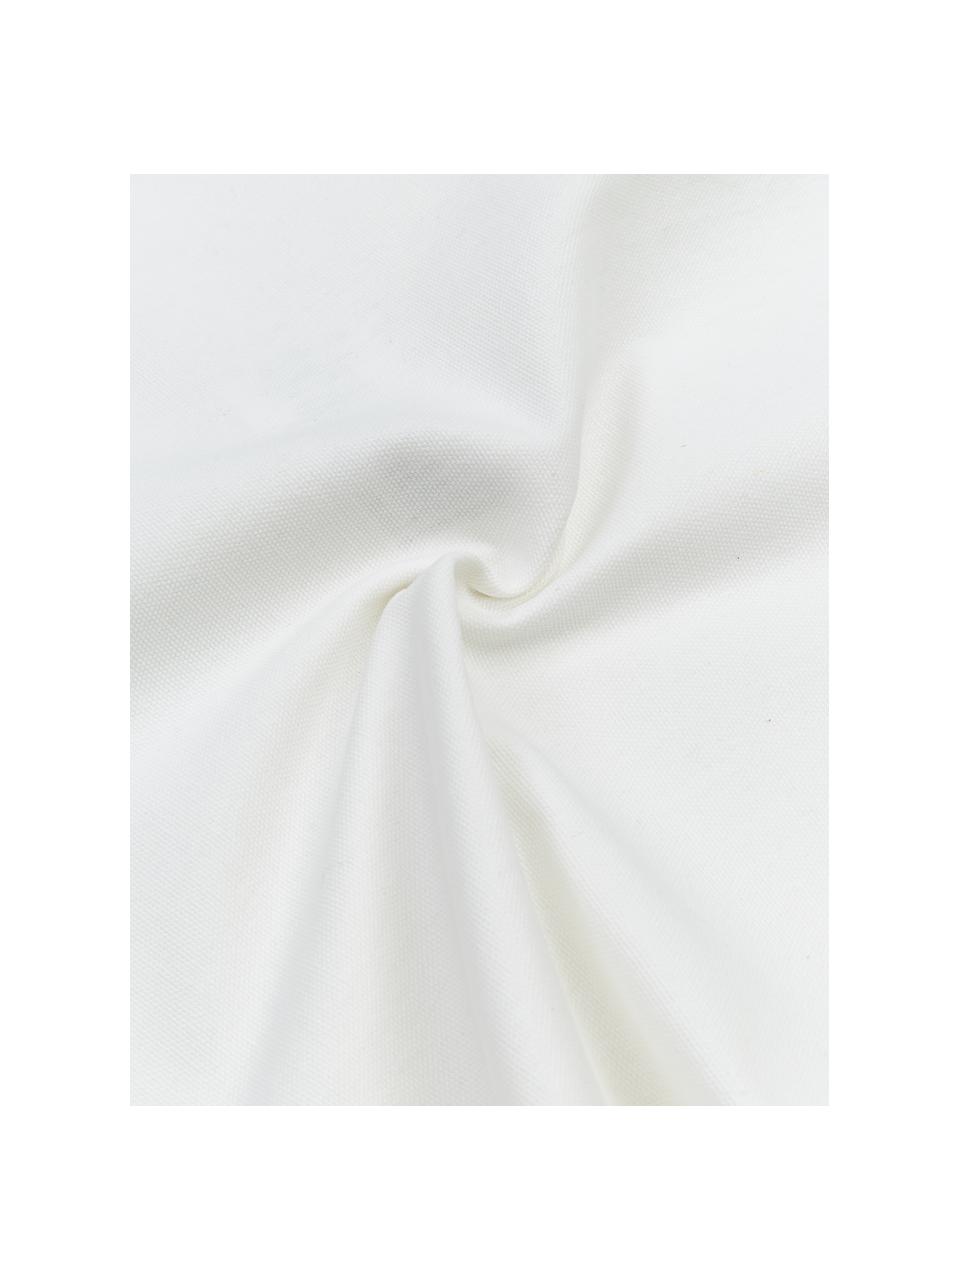 Kussenhoes Shylo in wit met kwastjes, 100% katoen, Wit, B 40 x L 40 cm